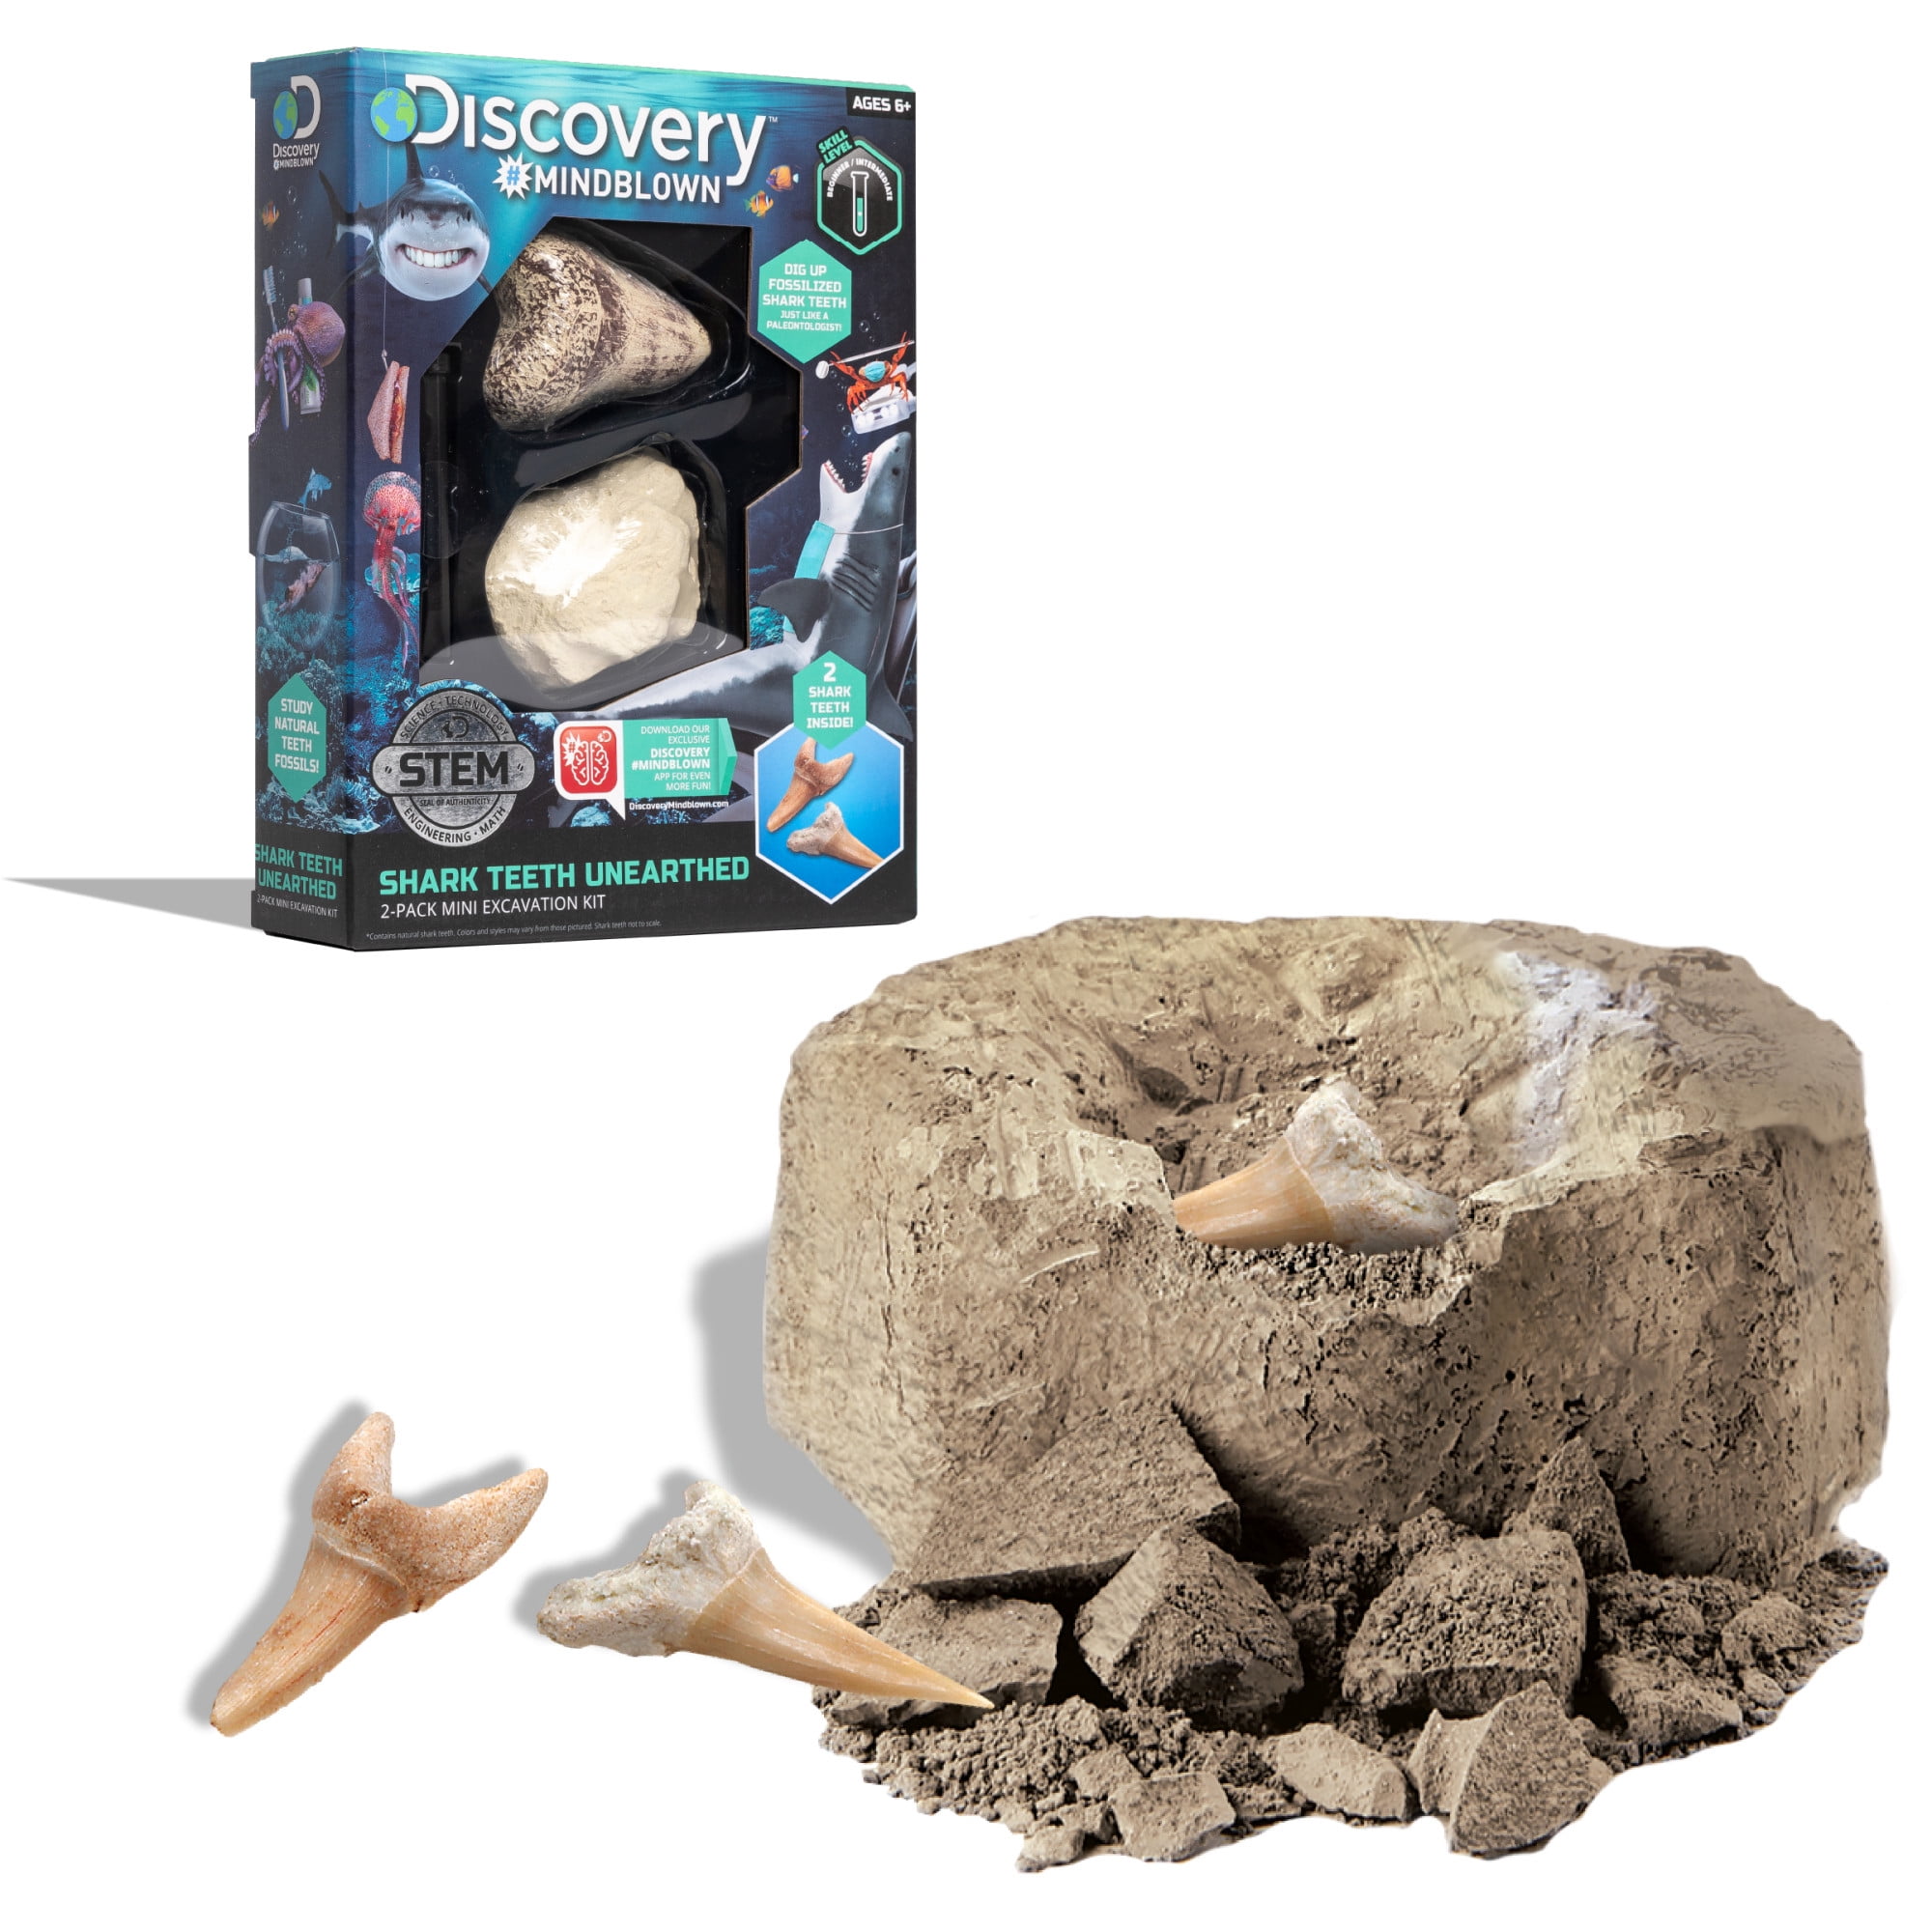 Space Rock Meteorite Dig It Out Science Geology Excavation Kit 